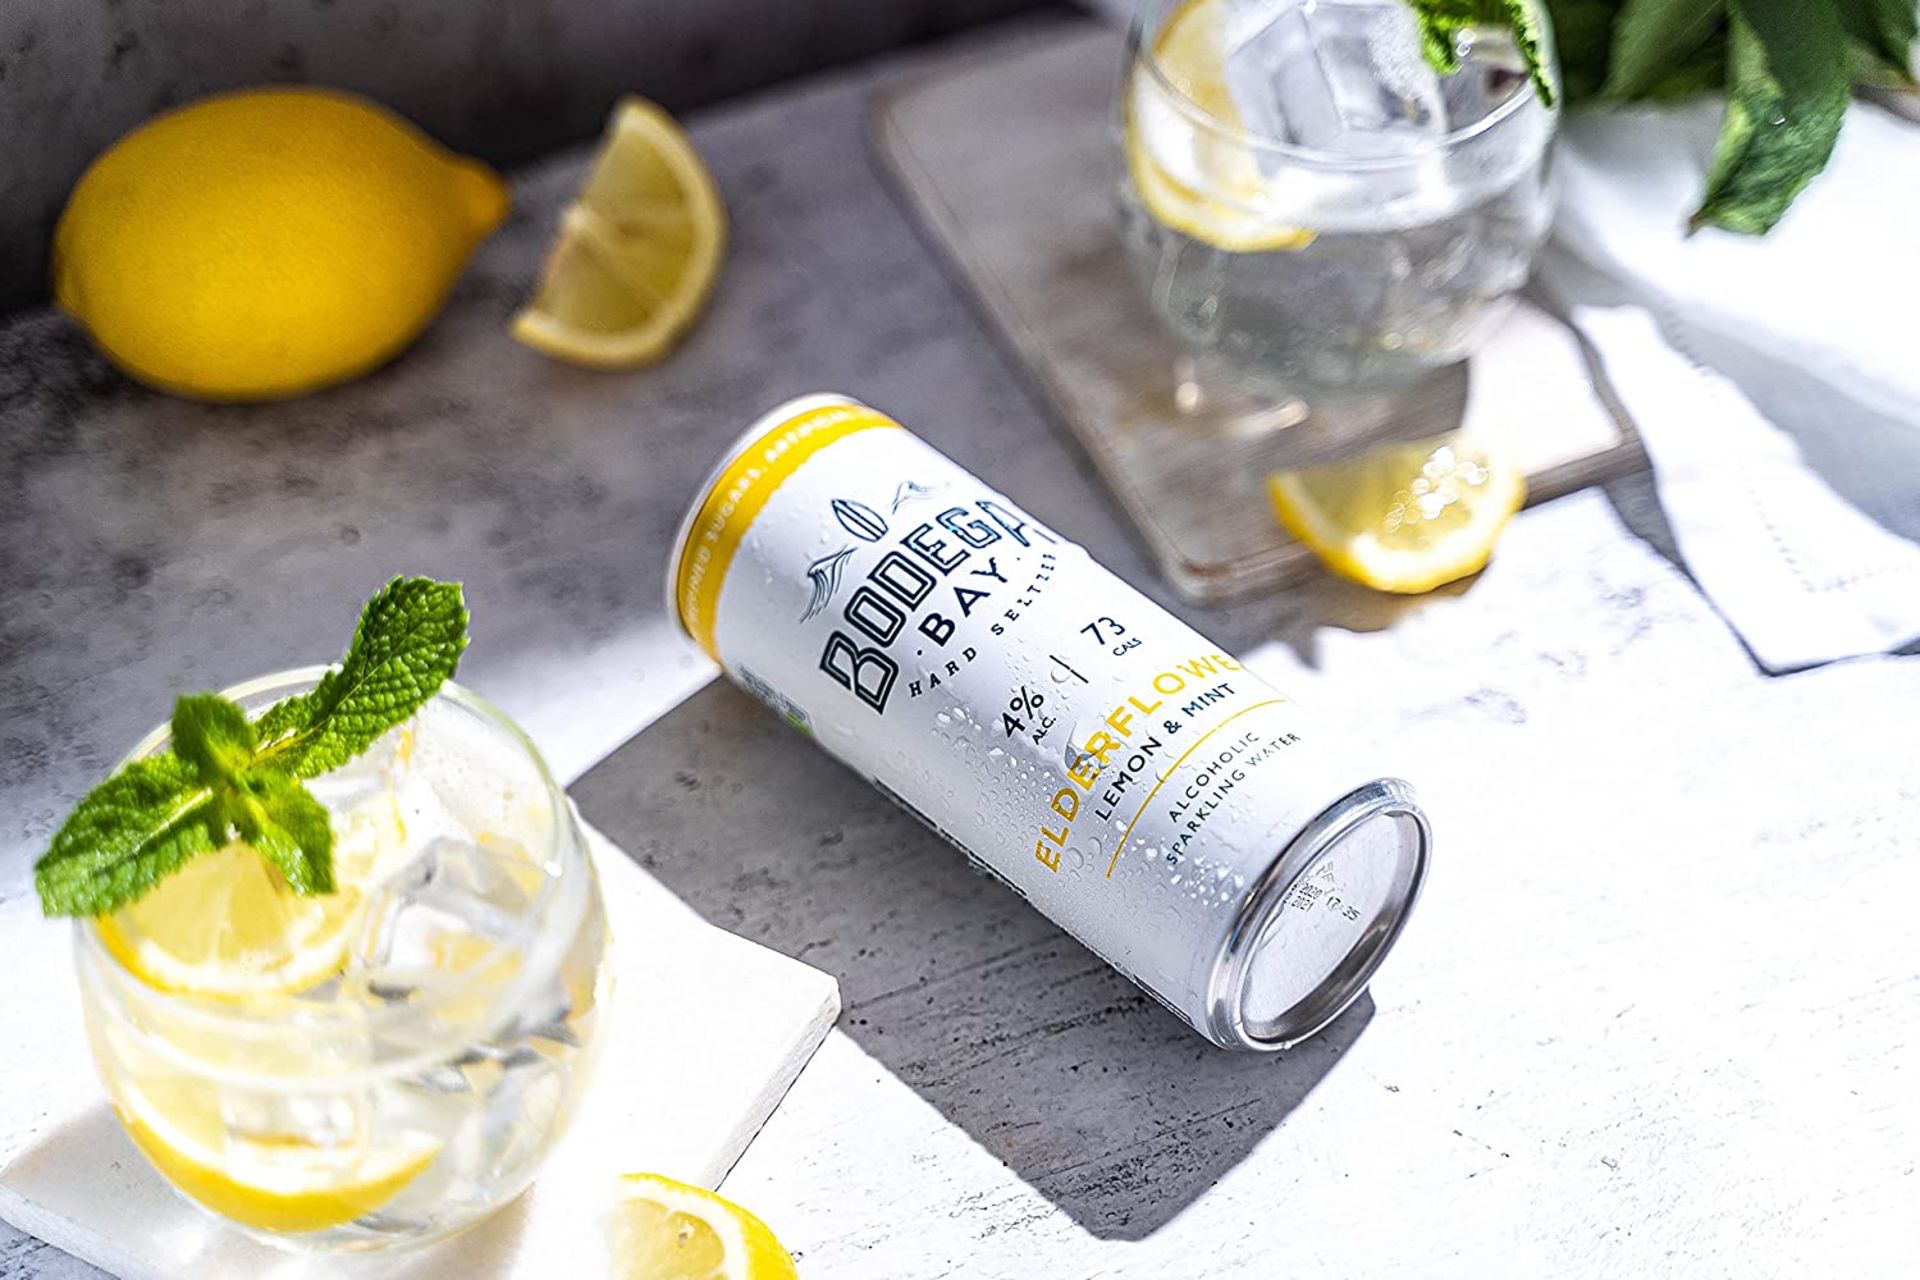 24 x Bodega Bay Hard Seltzer 250ml Alcoholic Sparkling Water Drinks - Elderflower Lemon & Mint - - Image 3 of 7